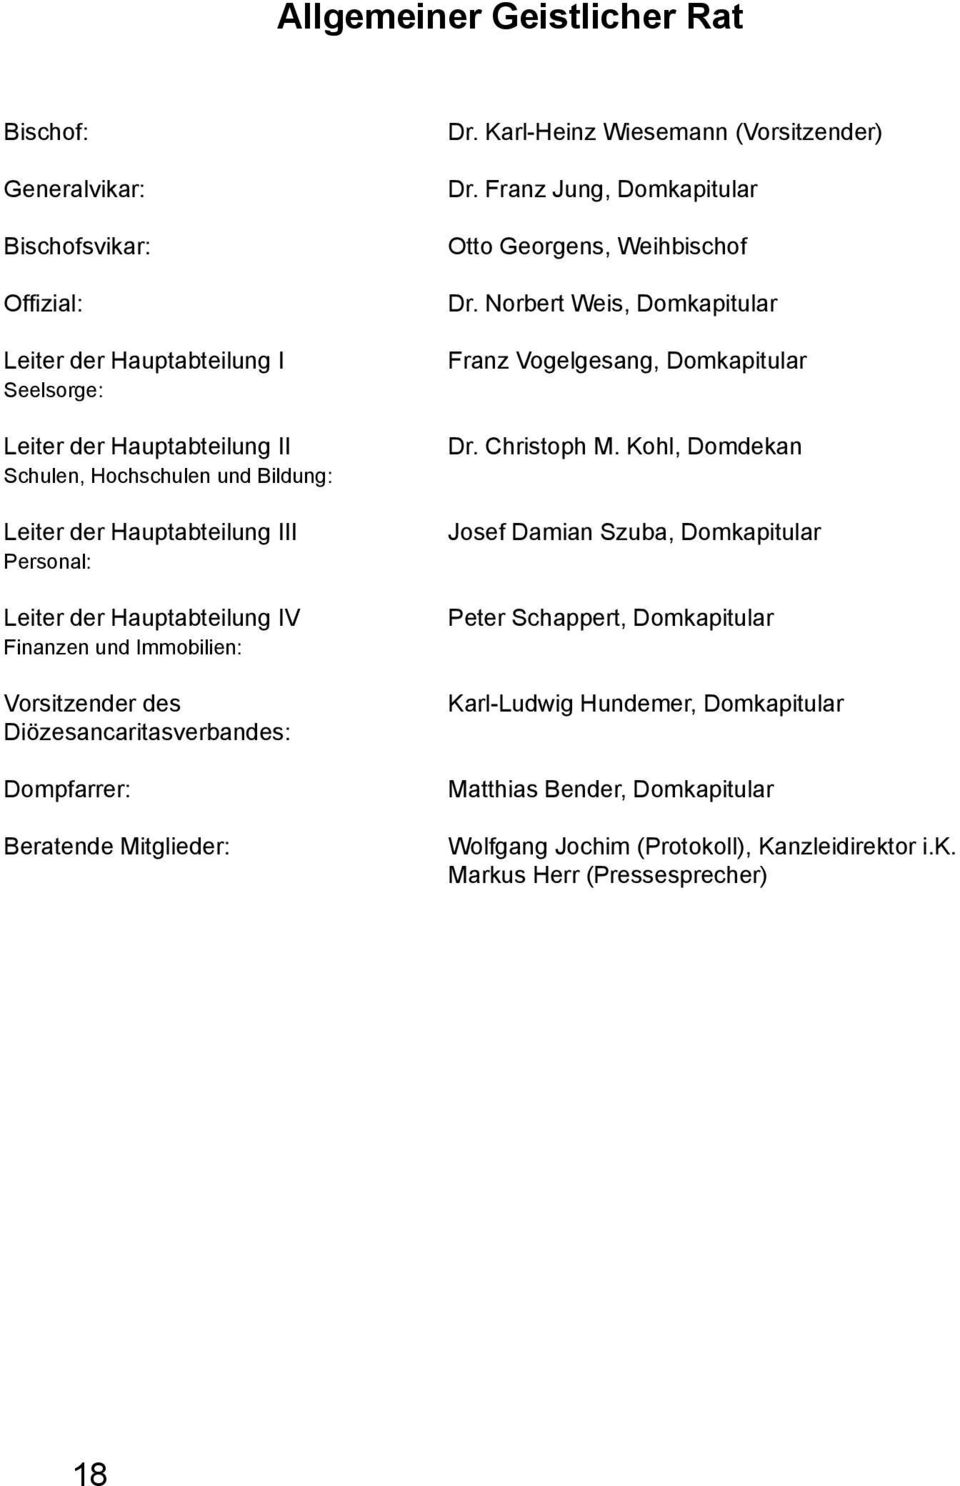 Karl-Heinz Wiesemann (Vorsitzender) Dr. Franz Jung, Domkapitular Otto Georgens, Weihbischof Dr. Norbert Weis, Domkapitular Franz Vogelgesang, Domkapitular Dr. Christoph M.